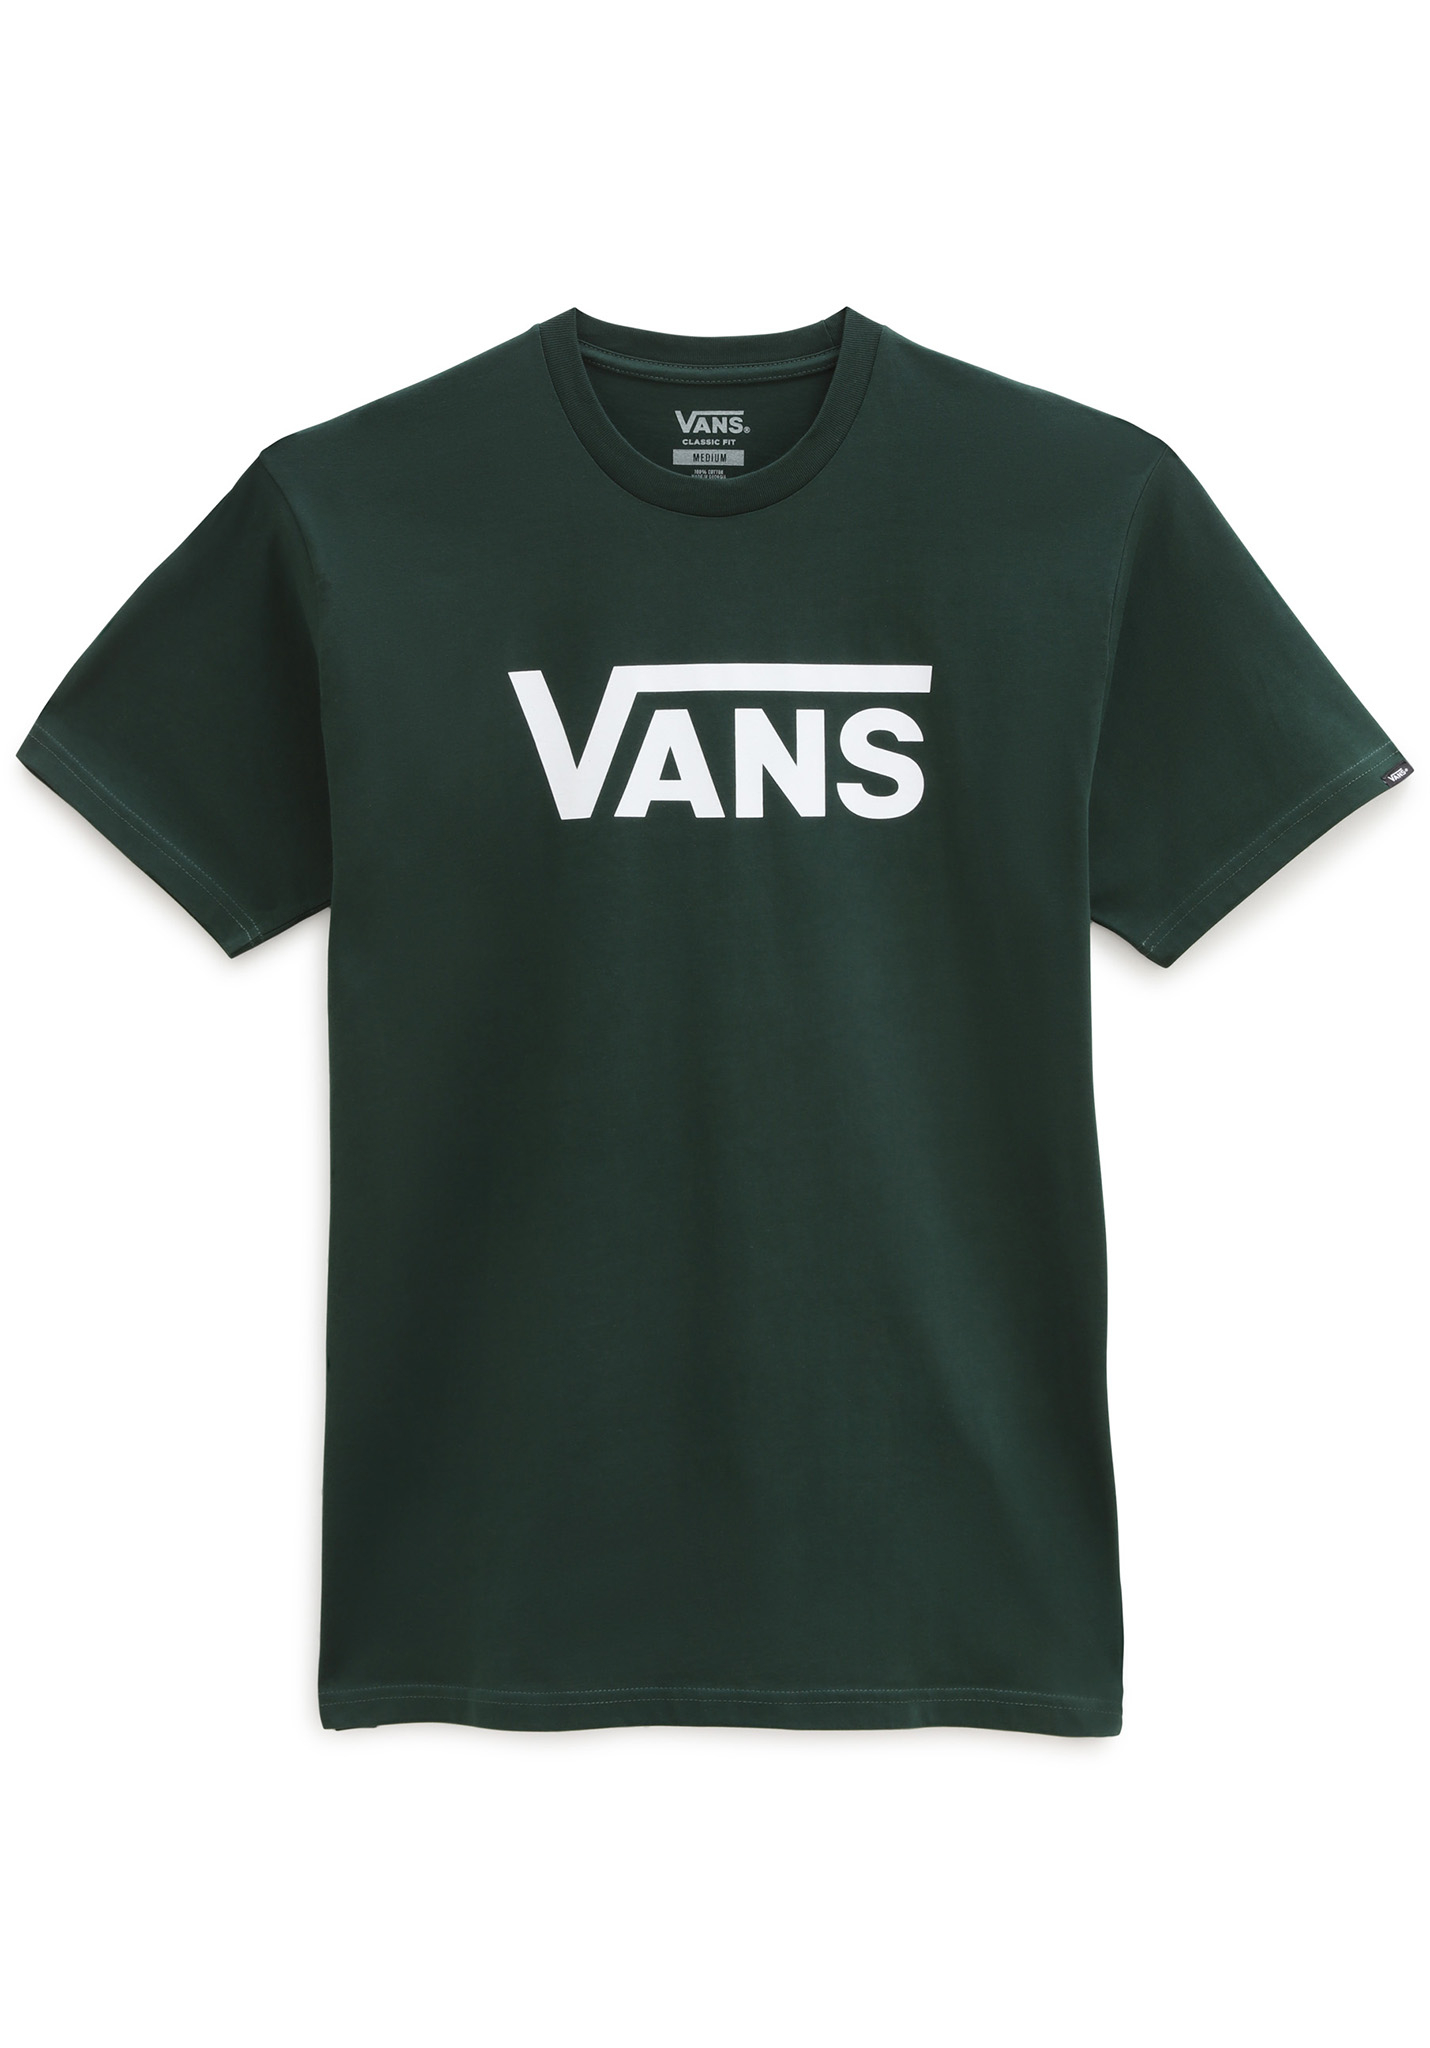 Vans Classic T-Shirt skarabäus L